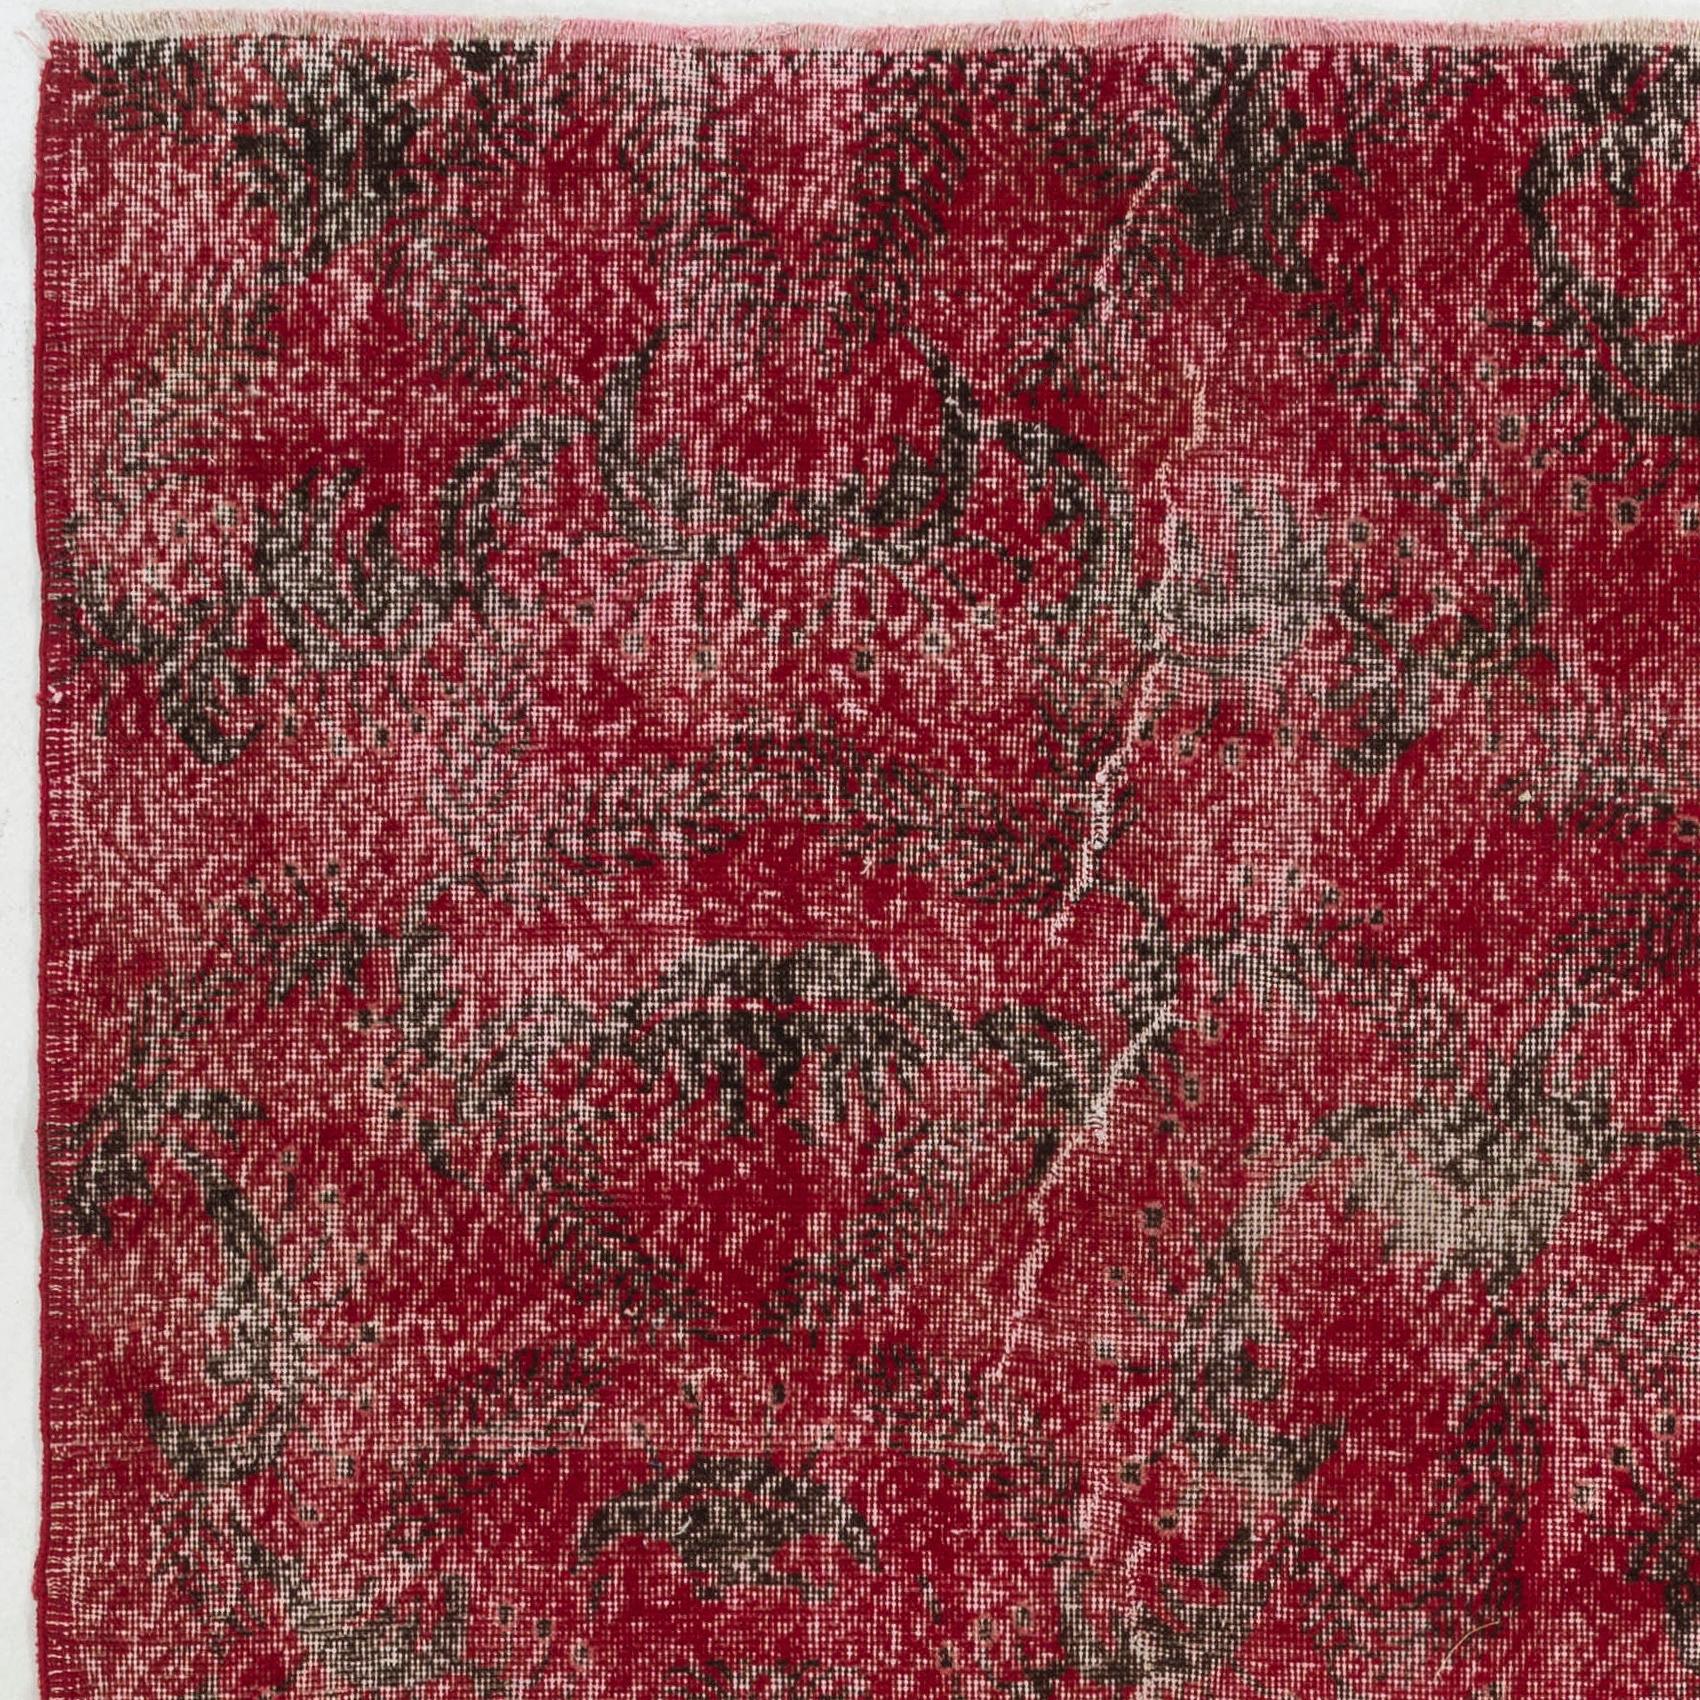 Ein seltener abstrakter türkischer Teppich aus der Jahrhundertmitte, der möglicherweise von dem berühmten Sänger/Künstler Zeki Muren (1931-1996) entworfen wurde. Sehr guter Zustand. Robust und so sauber wie ein nagelneuer Teppich (professionell